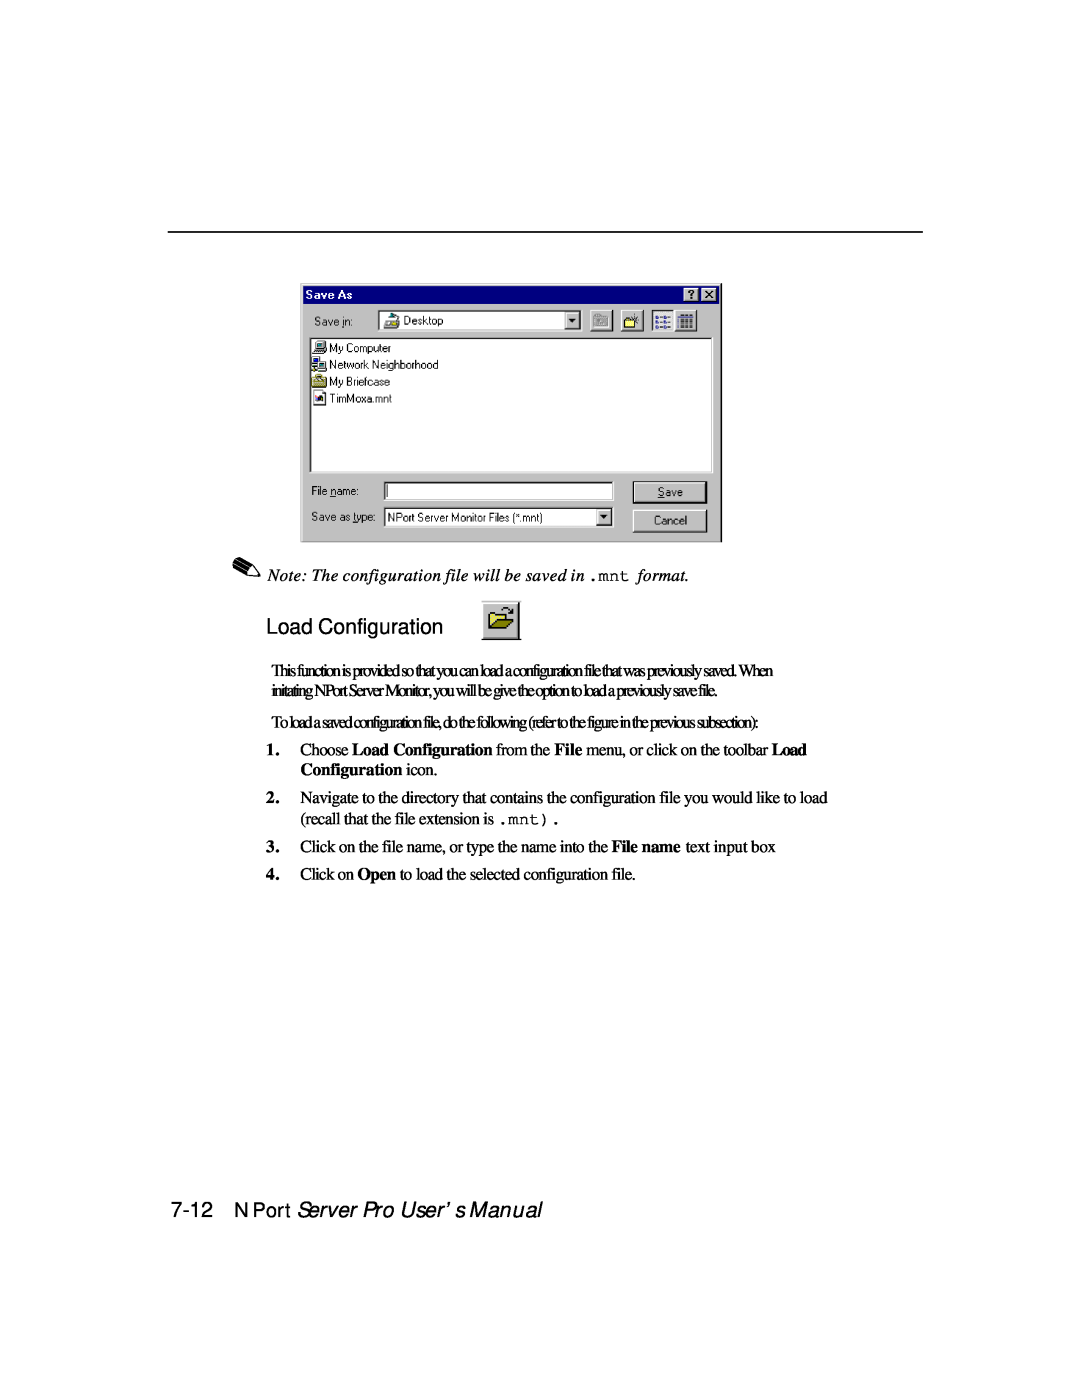 Moxa Technologies DE-303, DE-308 manual Load Configuration, NPort Server Pro User’s Manual 